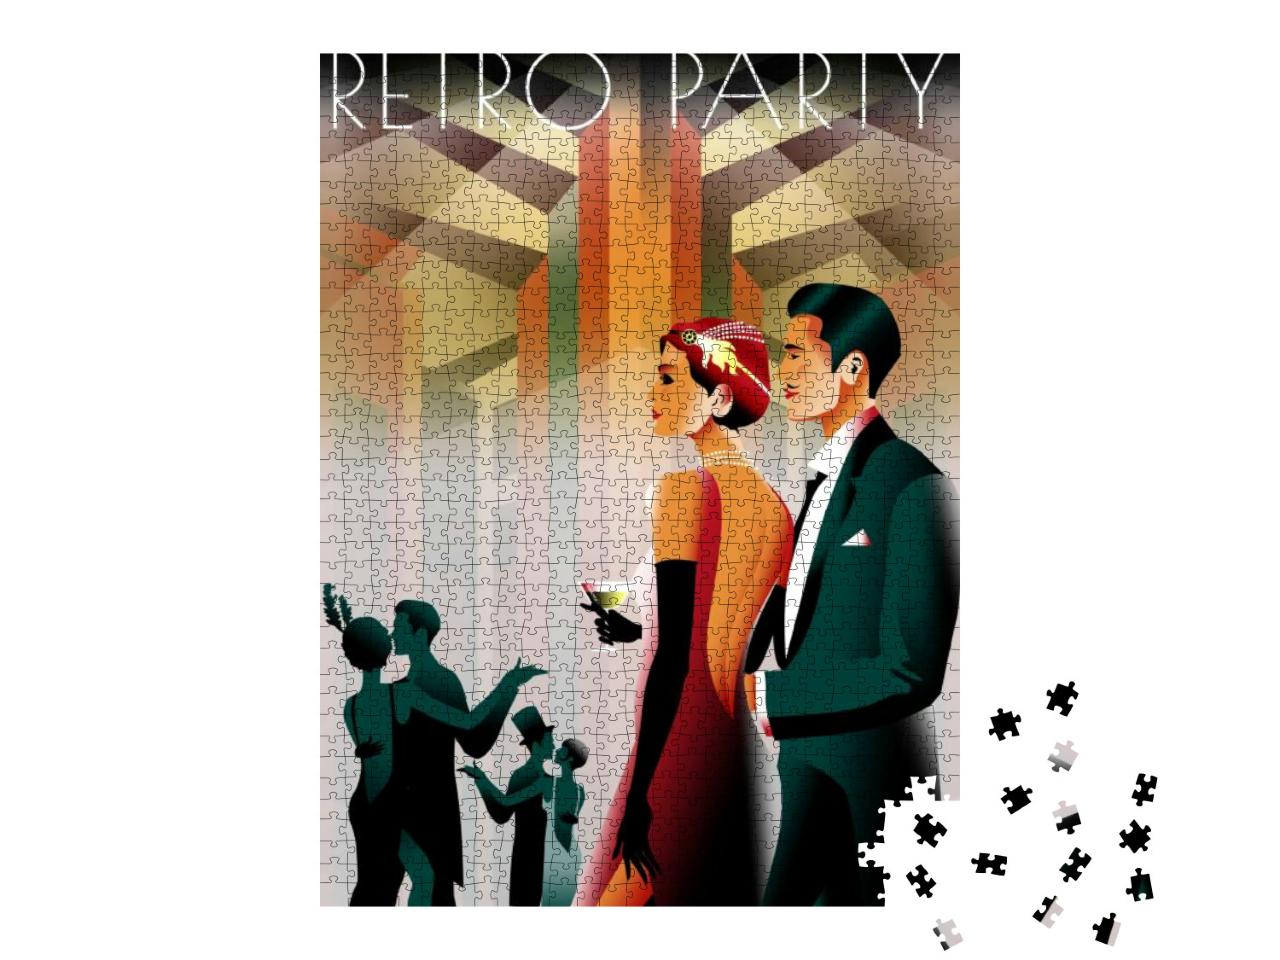 Puzzle 1000 Teile „Paar auf einer Party im Stil des frühen 20. Jahrhunderts, Retro-Party-Einladungskarte“